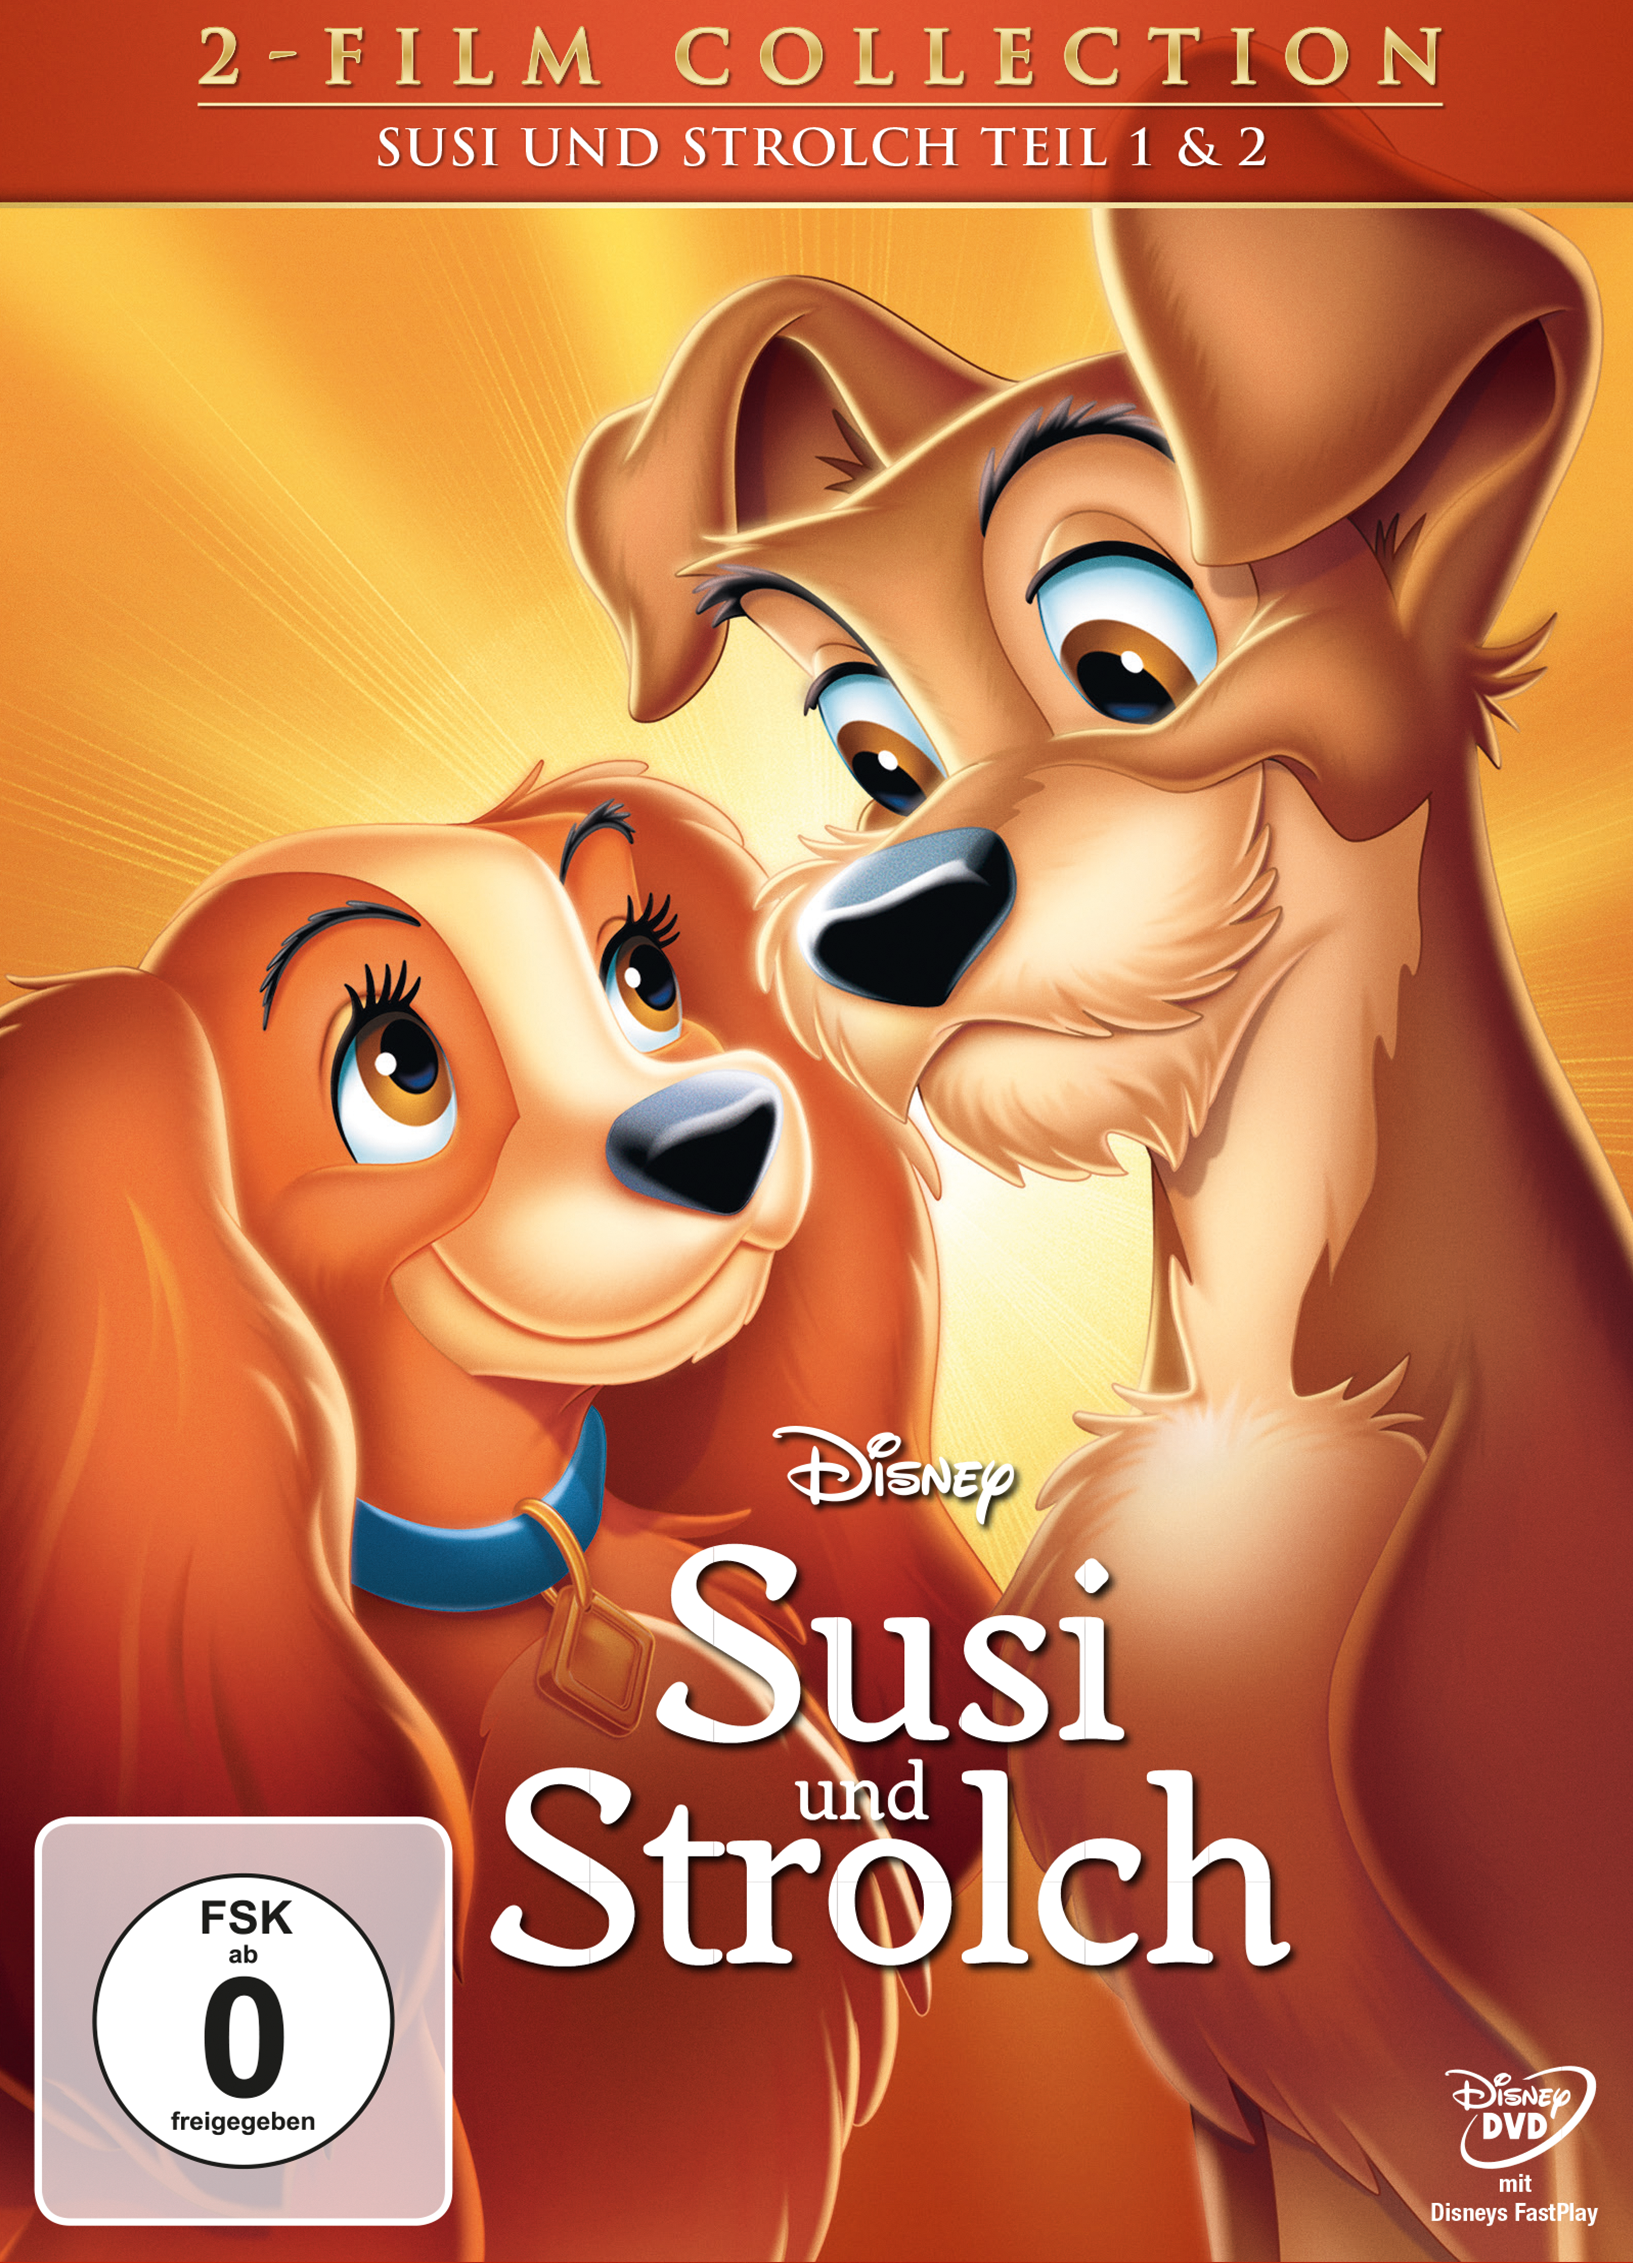 Edition Strolch DVD + und Diamond Susi und - II Strolch Susi